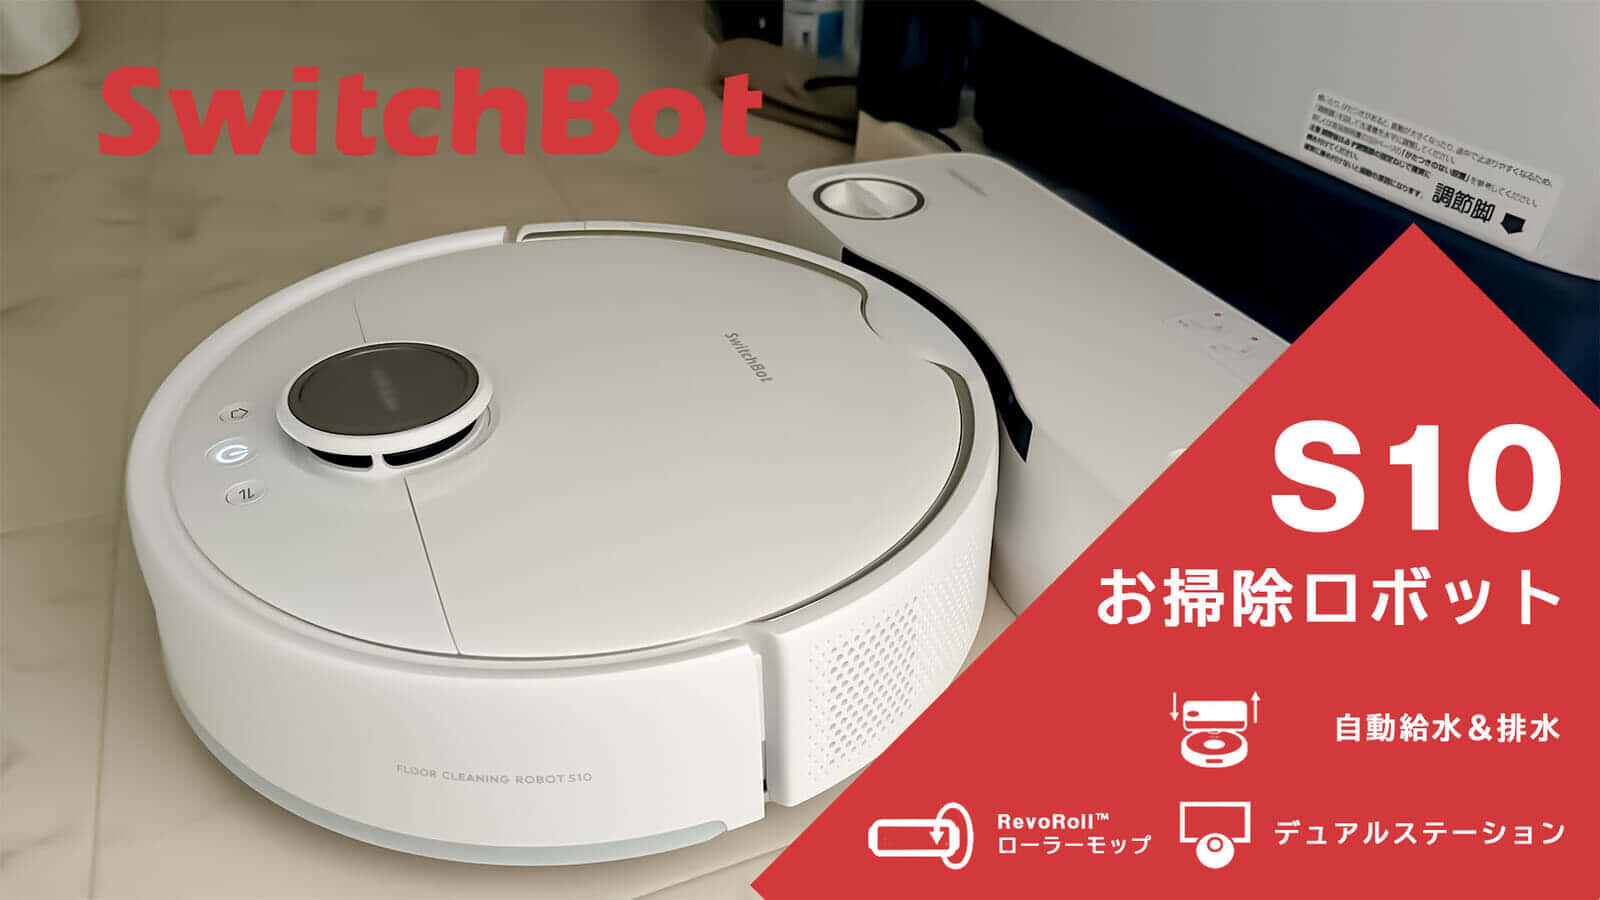 Switch Bot お掃除ロボットS10 レビュー、水補充&汚水捨てを自動化したロボット掃除機を試す【PR】